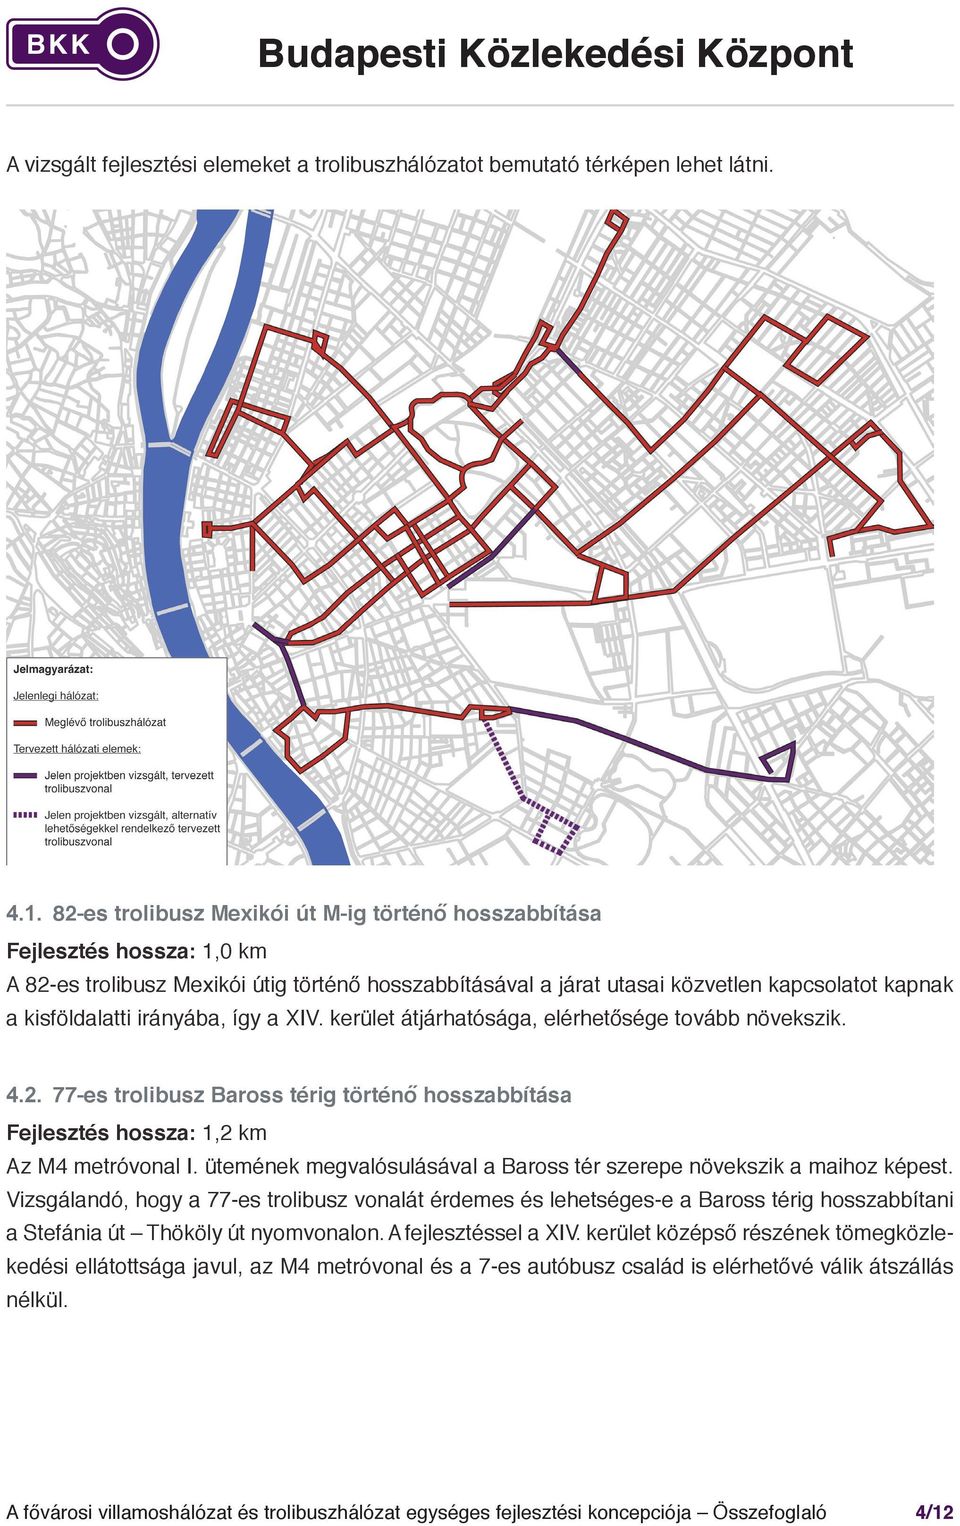 4. 9-es buszviszonylat trolibusz-viszonylattá alakítása Fejlesztés hossza: 4,0 km A Baross utcán és a Kőbányai úton keresztül haladó 9-es autóbusz a Baross utca teljes hoszszában párhuzamosan